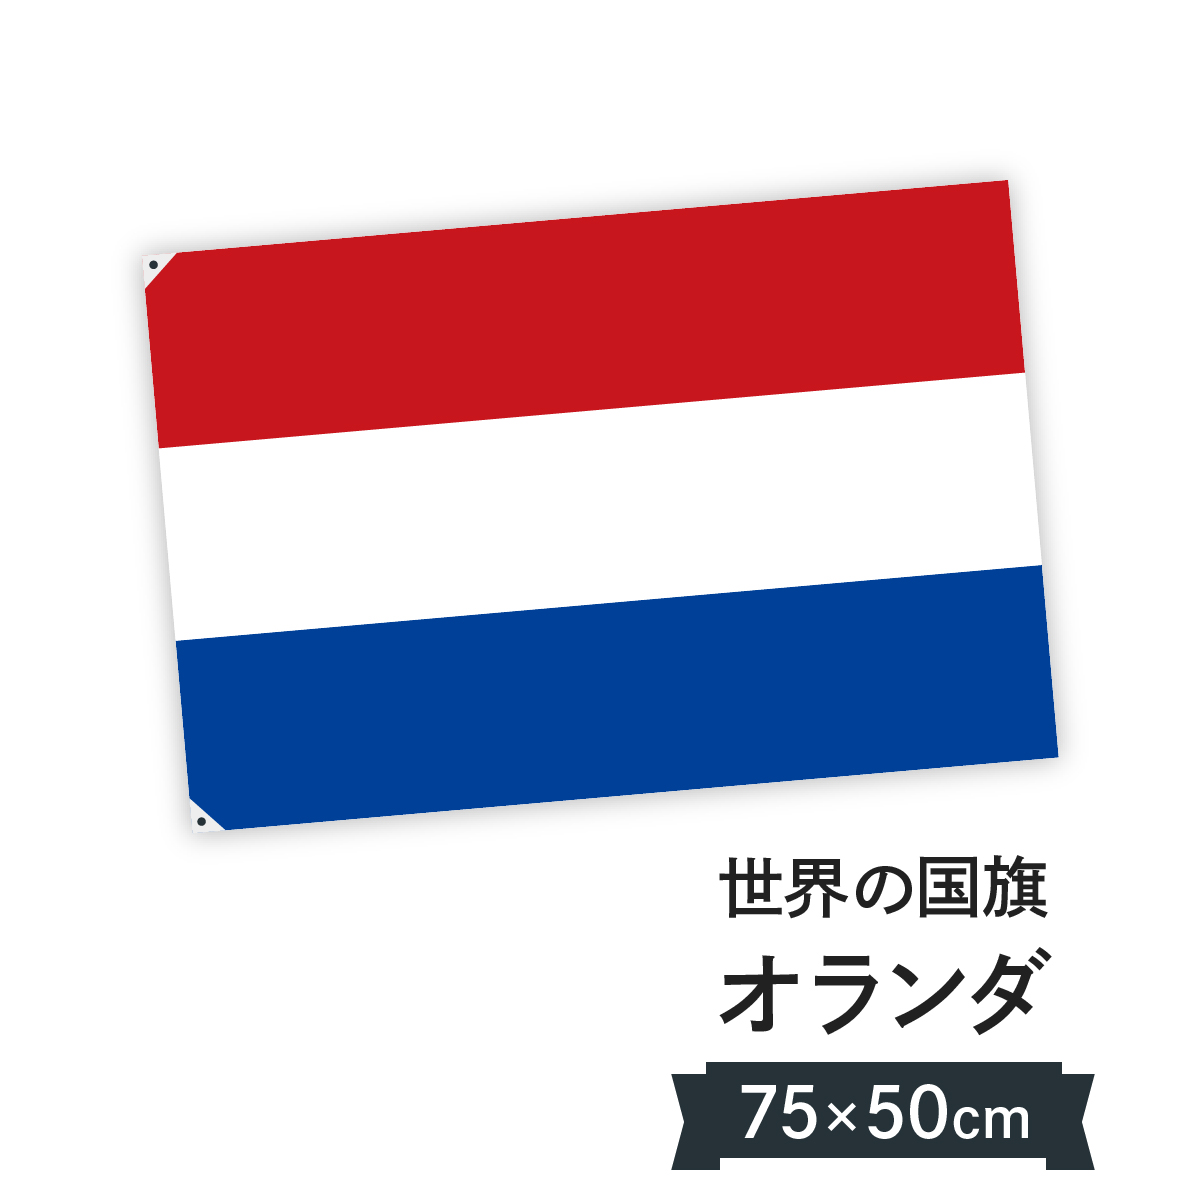 第1位獲得 世界の国旗 オランダ 100 150cmテトロン 安心の日本製 0ヶ国在庫 統一価格 軽量で風によくなびき シワになりにくい爽やかテトロン素材 超特価激安